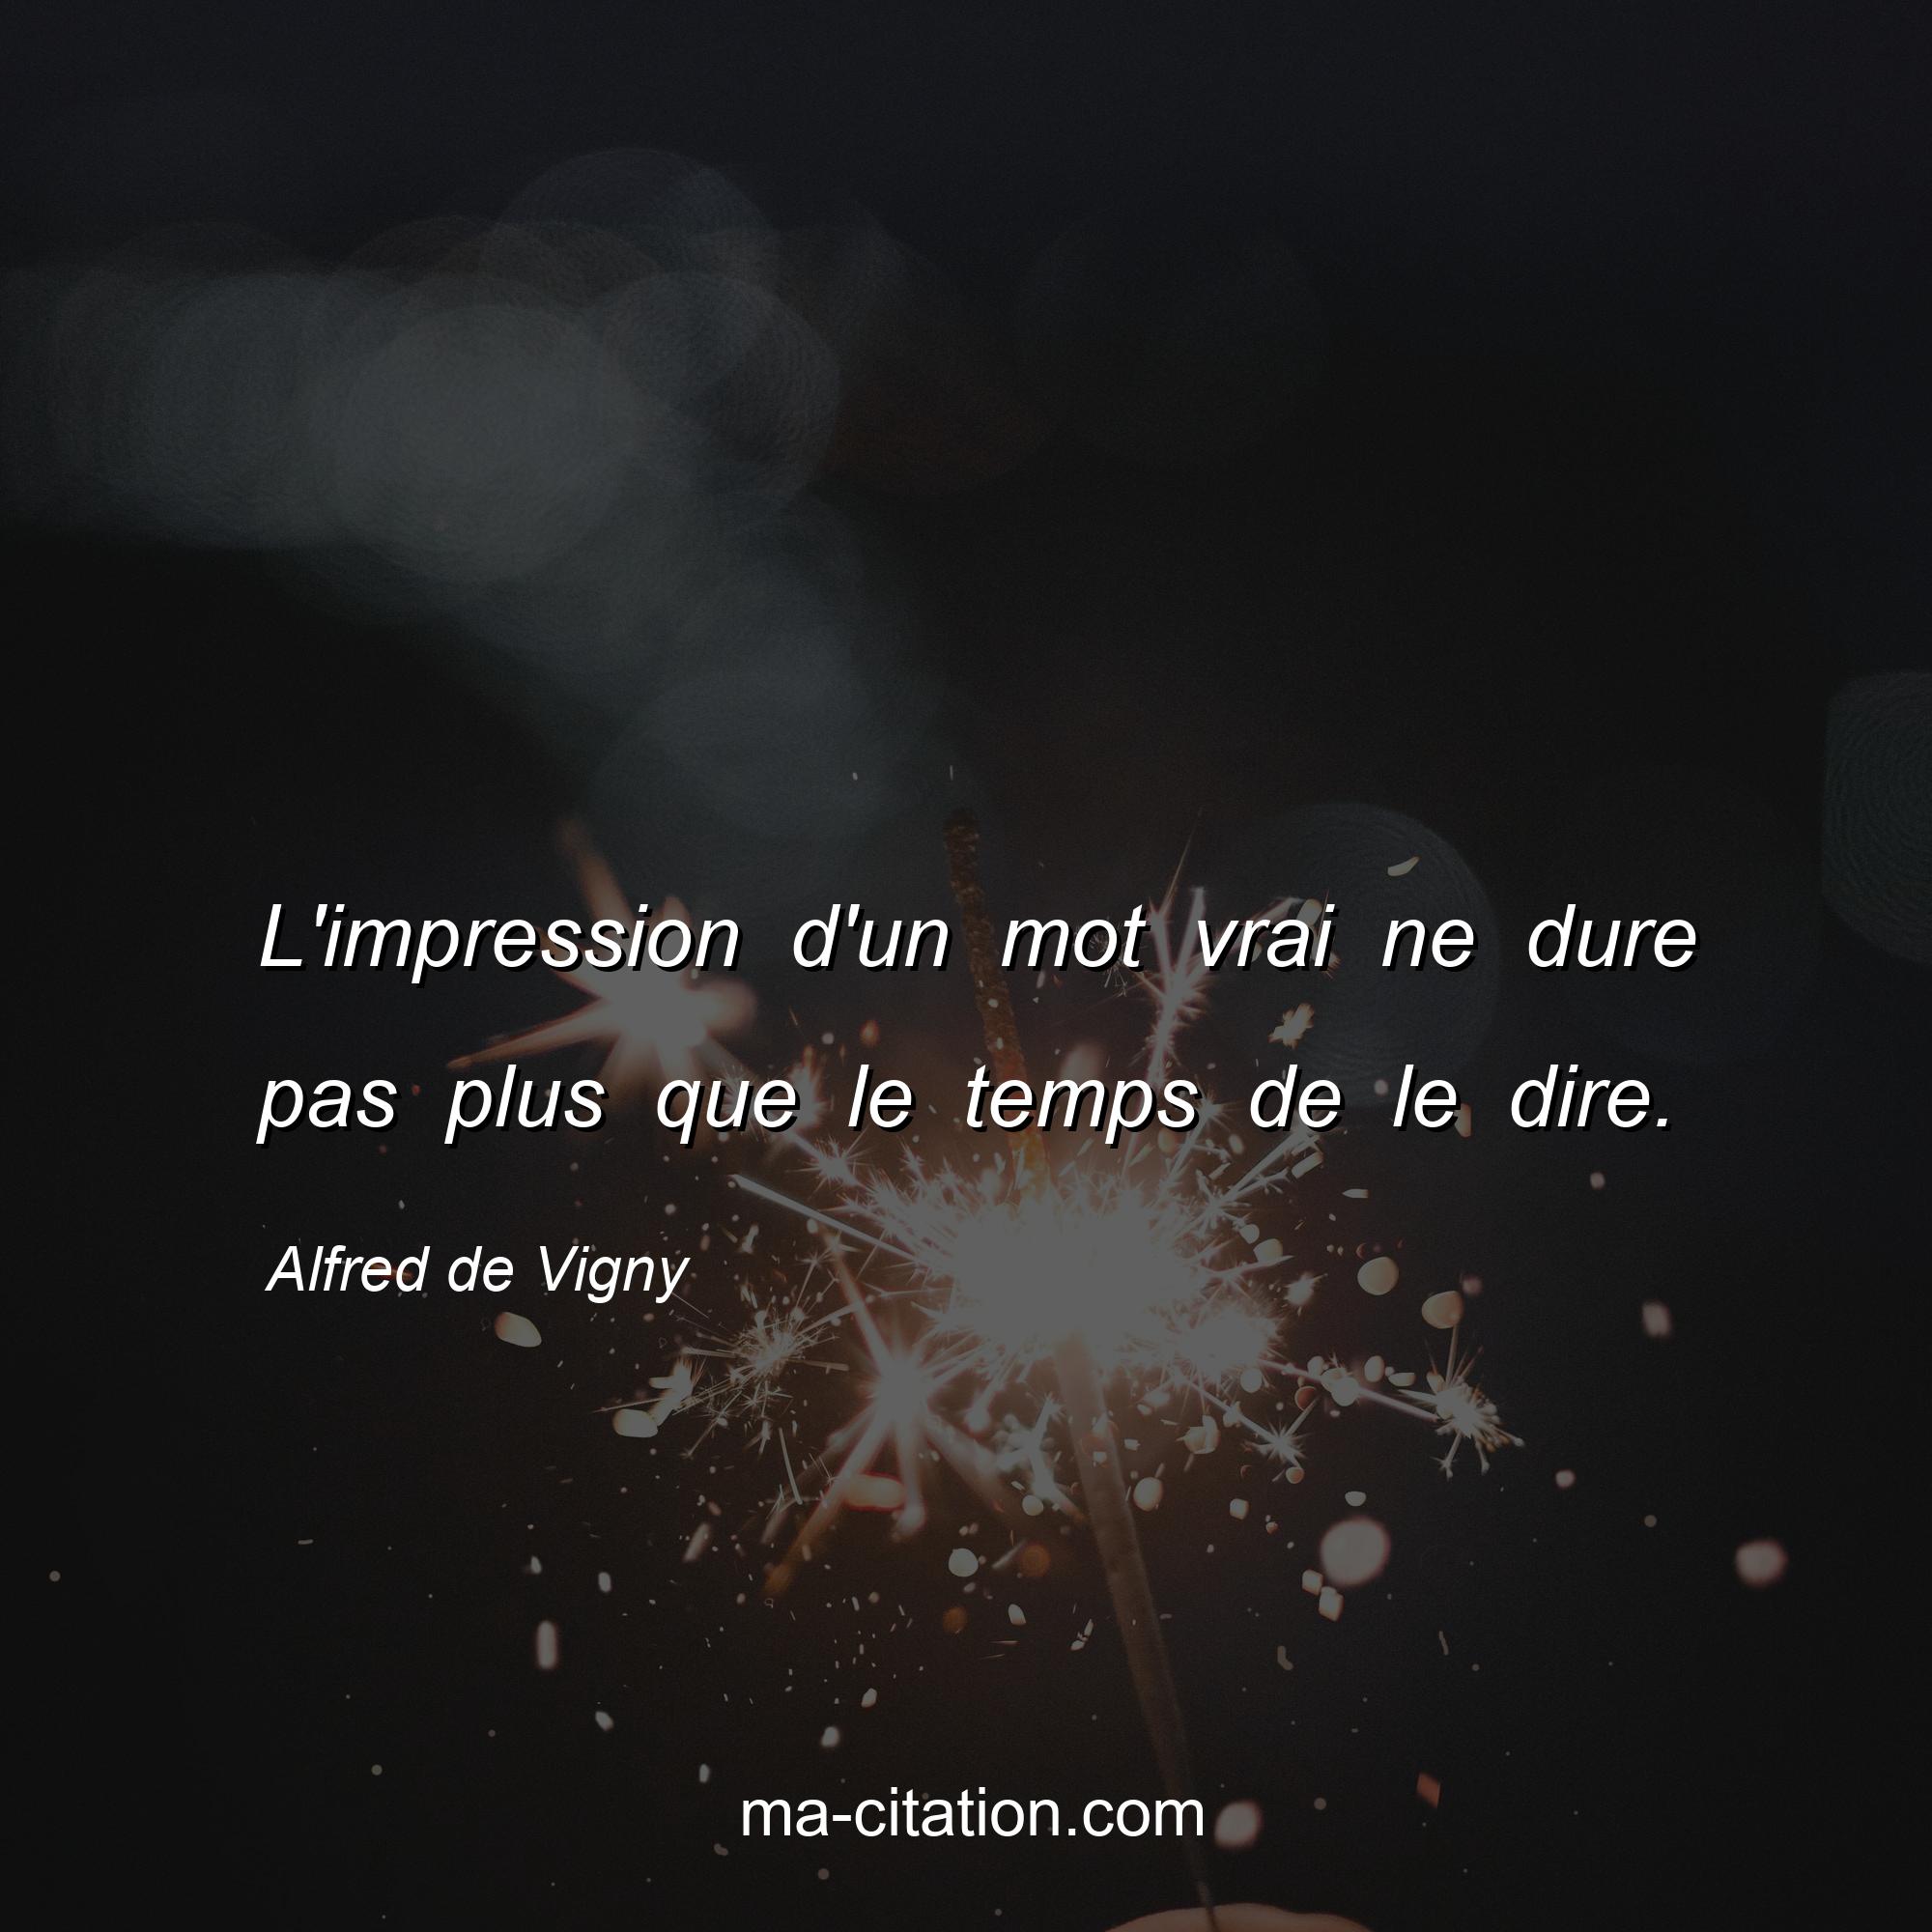 Alfred de Vigny : L'impression d'un mot vrai ne dure pas plus que le temps de le dire.